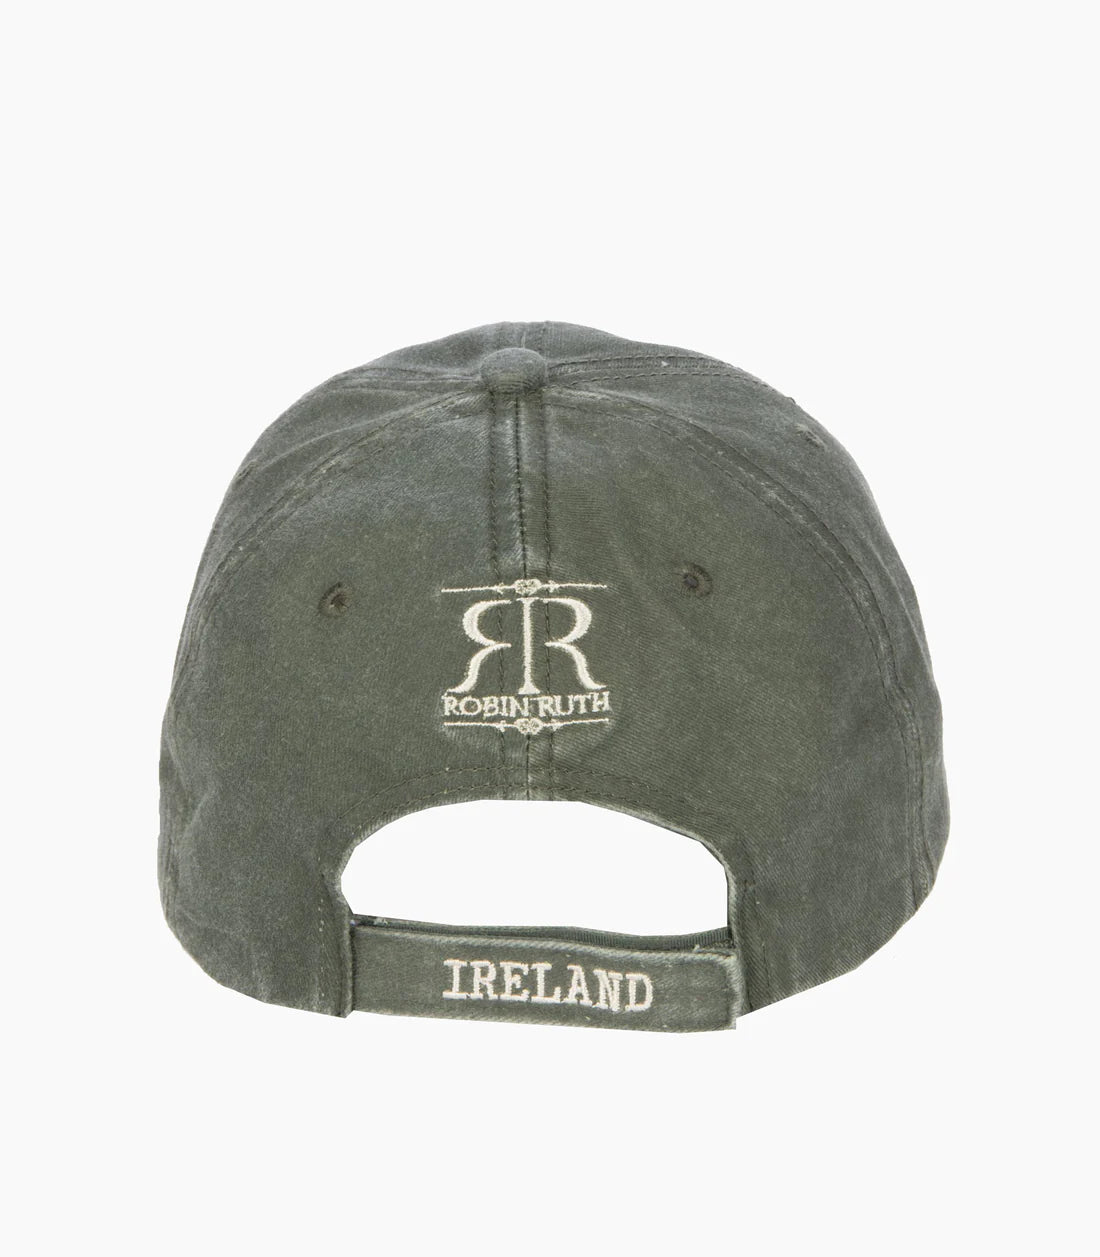 Ireland Original Baseball Cap (Olive) - Zhivago Gifts